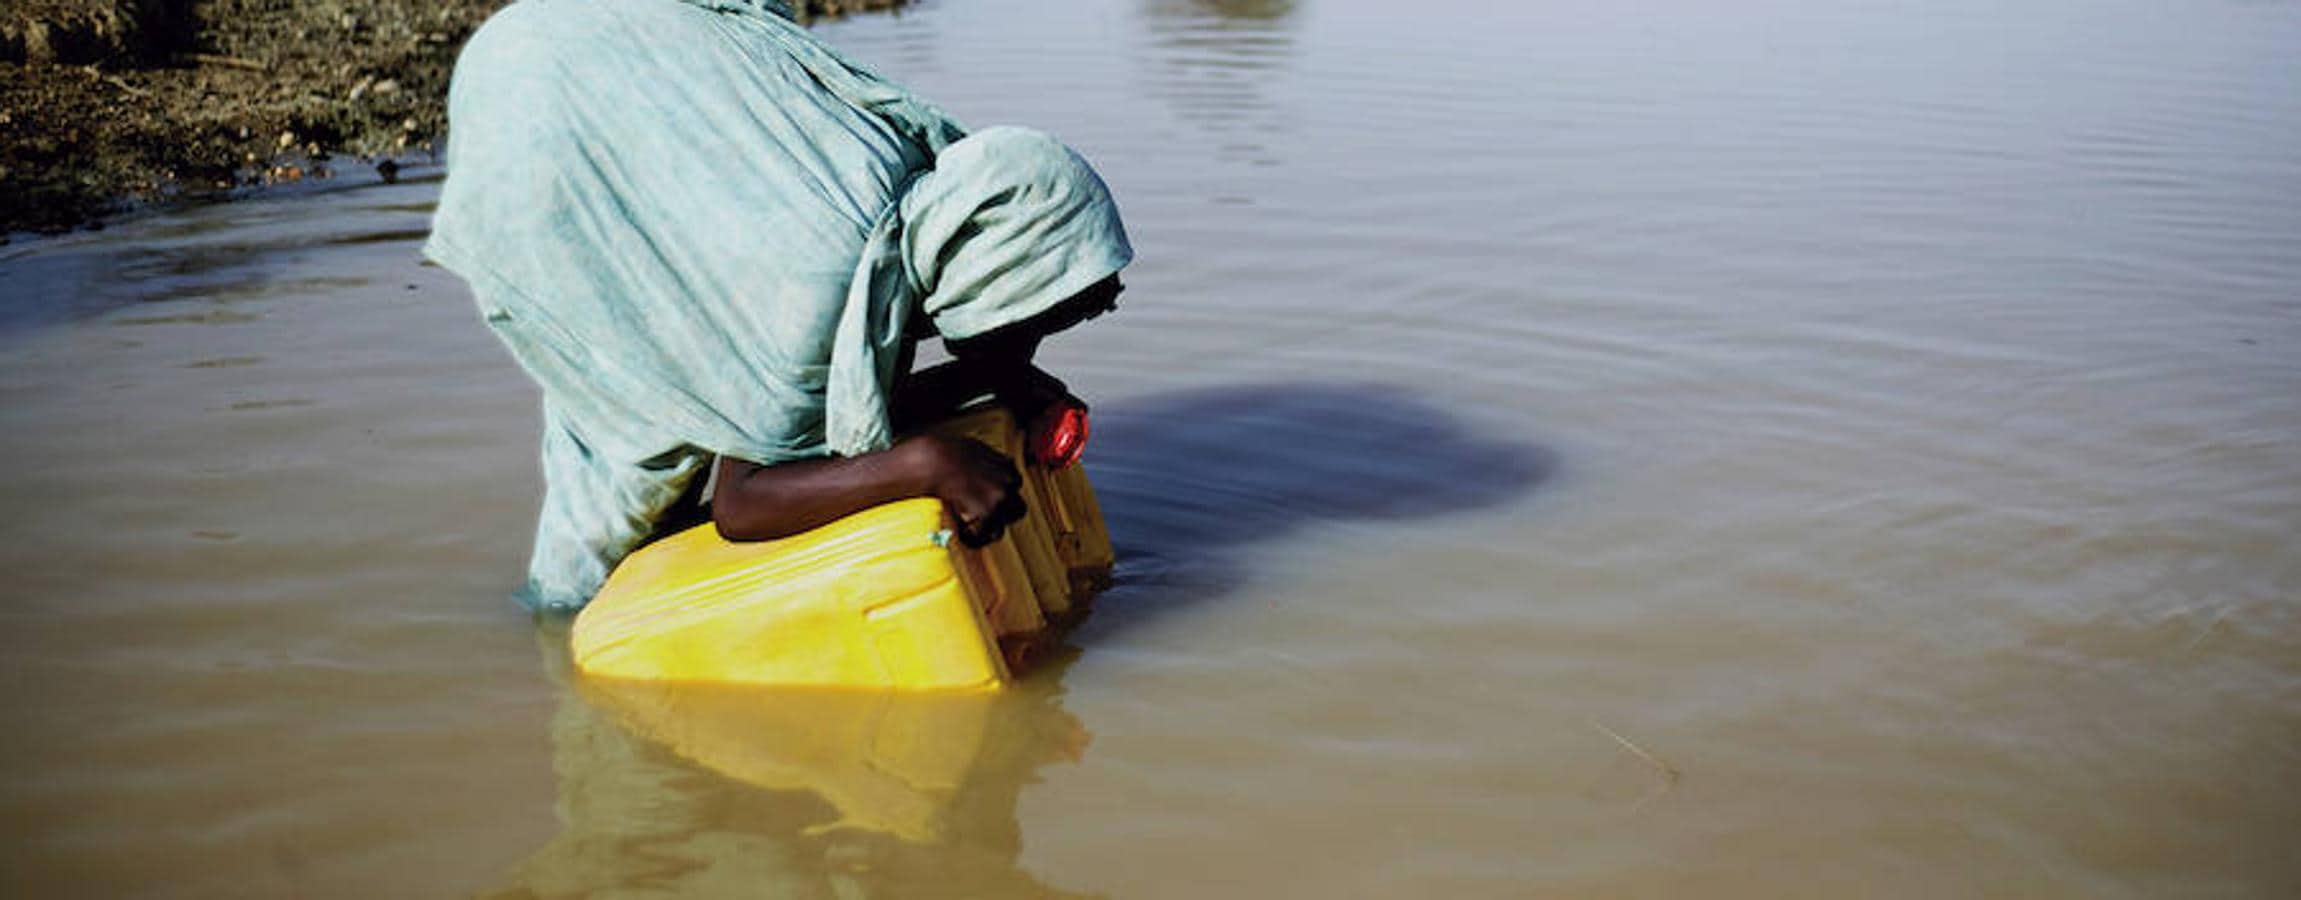 La de una mujer o una niña encorvada para recoger agua en una garrafa, es una estampa que se sigue repitiendo cada día en gran parte del mundo. Suele ser al amanecer o al atardecer, después de haber caminado kilómetros. El agua que recogen no es, muchas veces, segura. Esta mujer se encuentra en el río Gorgol de Mauritana.Ha habido avances: 147 países han logrado cumplir el Objetivo de Desarrollo del Milenio relacionado con el agua. Para garantizar una buena salud nutricional, tan importante como los alimentos es contar con un pozo o un punto de agua seguro.